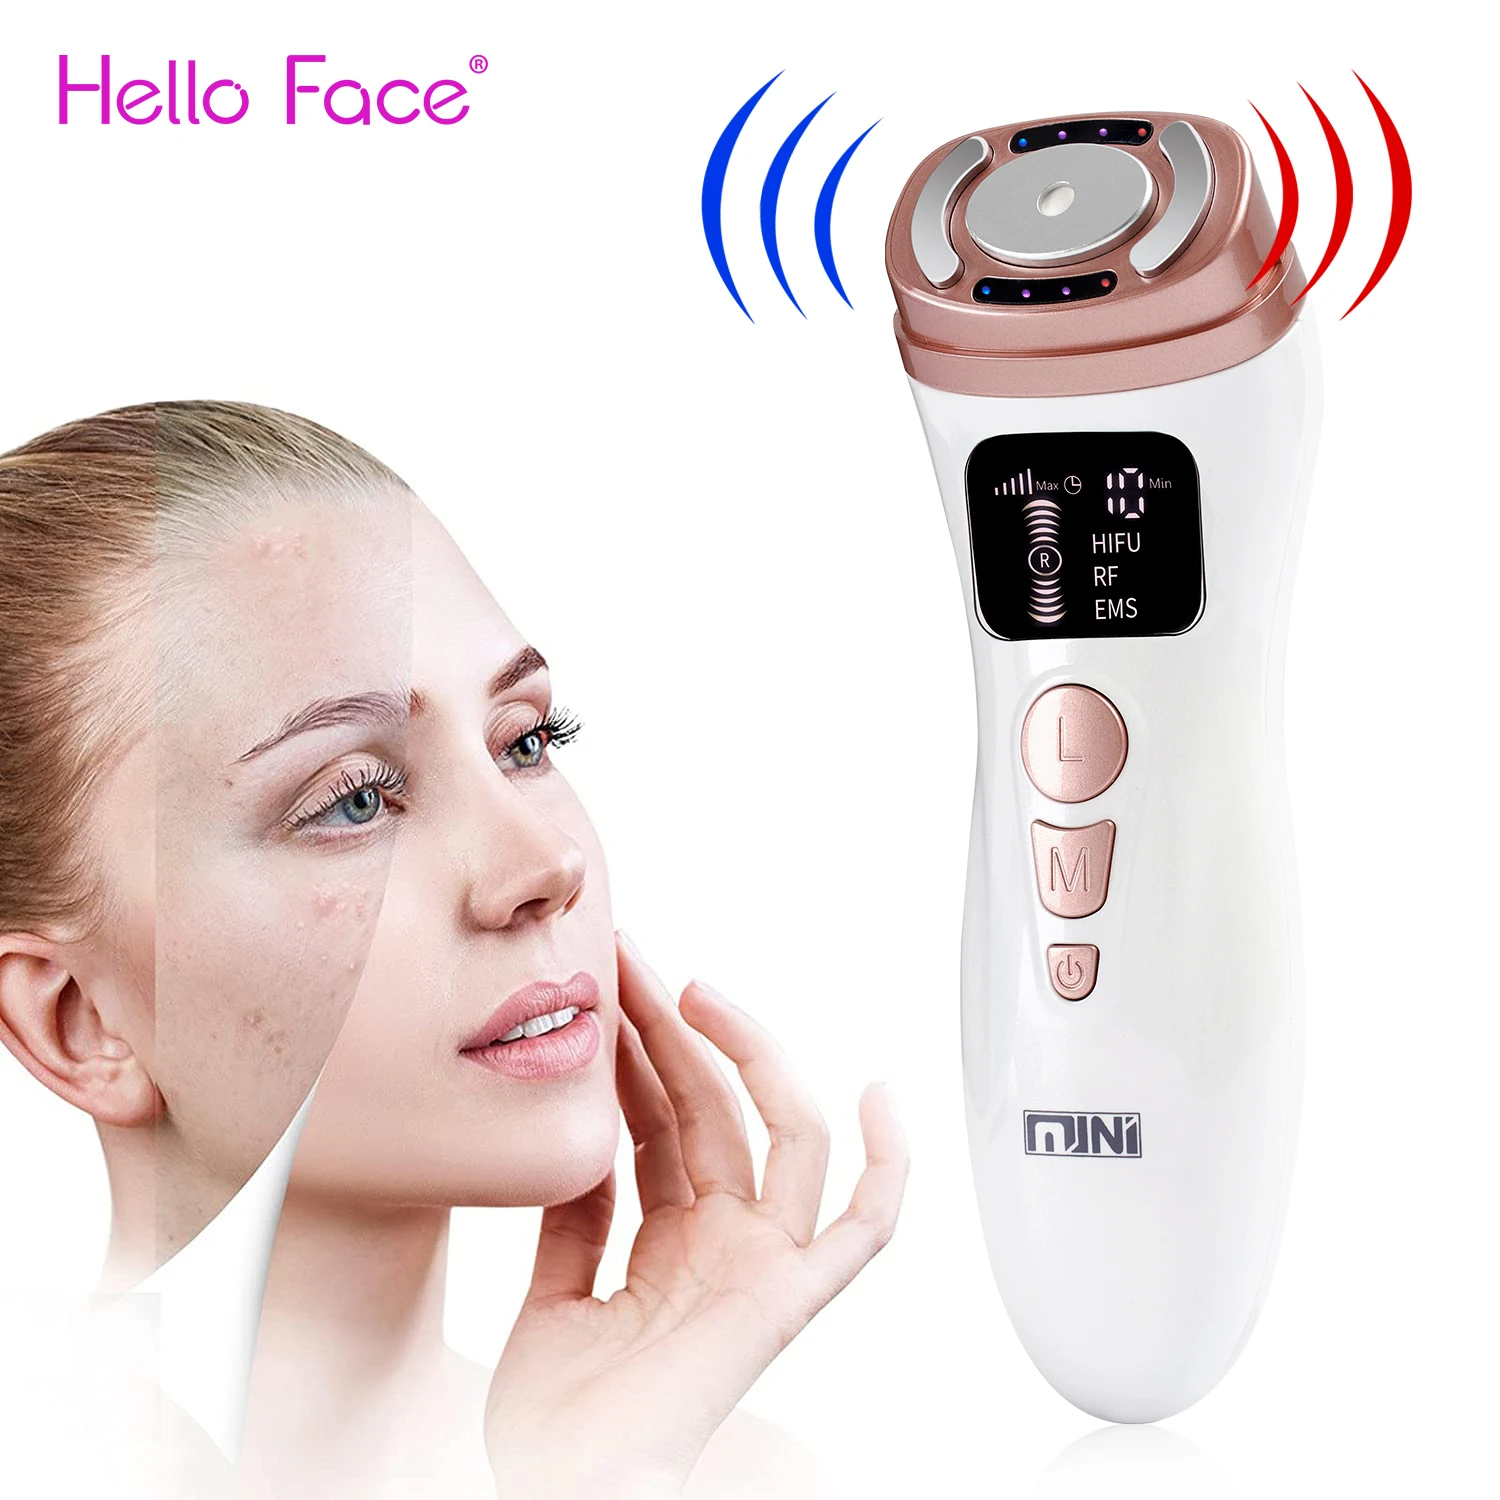 Mini HIFU Machine Anti Age Portable HIFU Facial Lift Device Professional Radio Frequency Face Home Use Heat Up Rejuvenation Tool